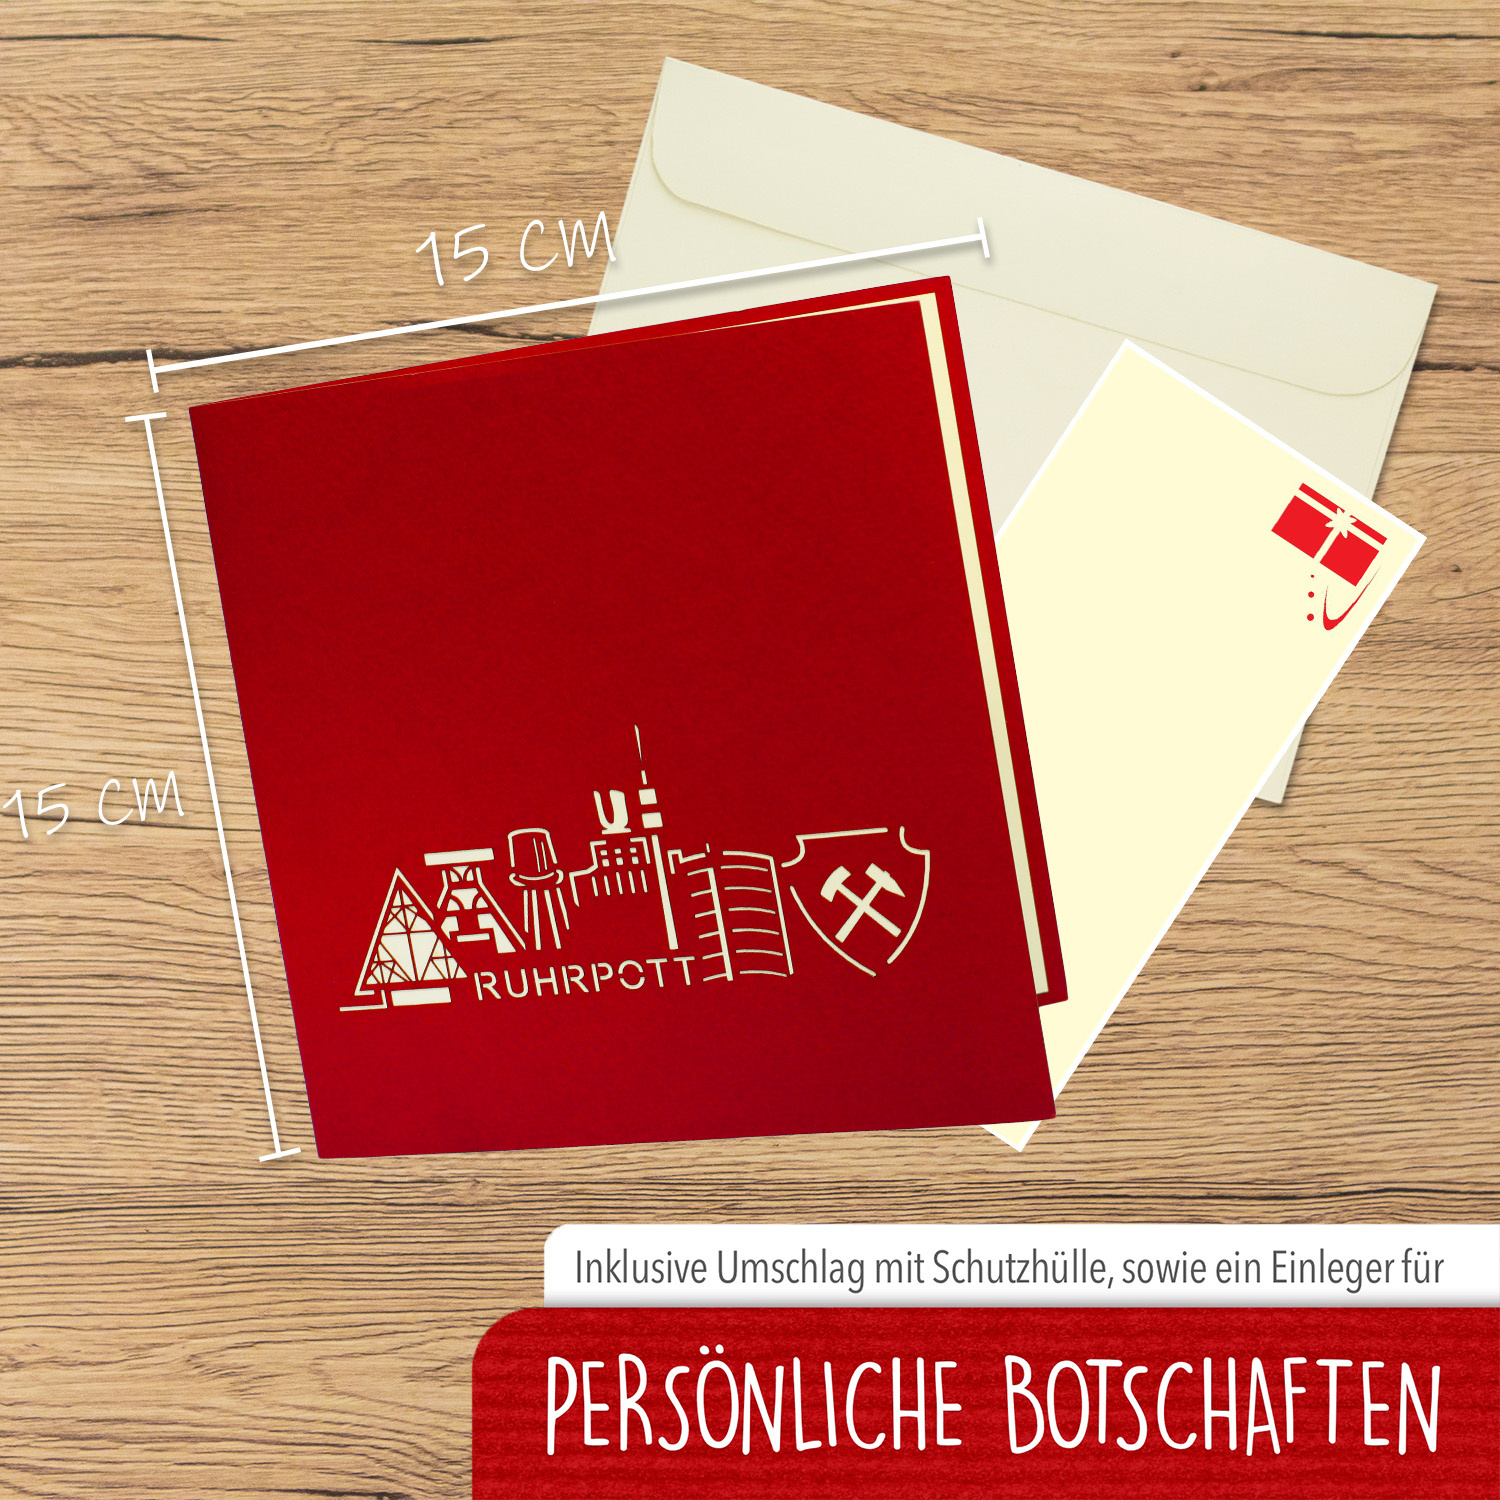 LINPOPUP Pop Up 3D Card, Birthday Card, Greeting Card, Travel Voucher, Ruhr Area, Ruhrpott, LIN17493, LINPopUp®, N267